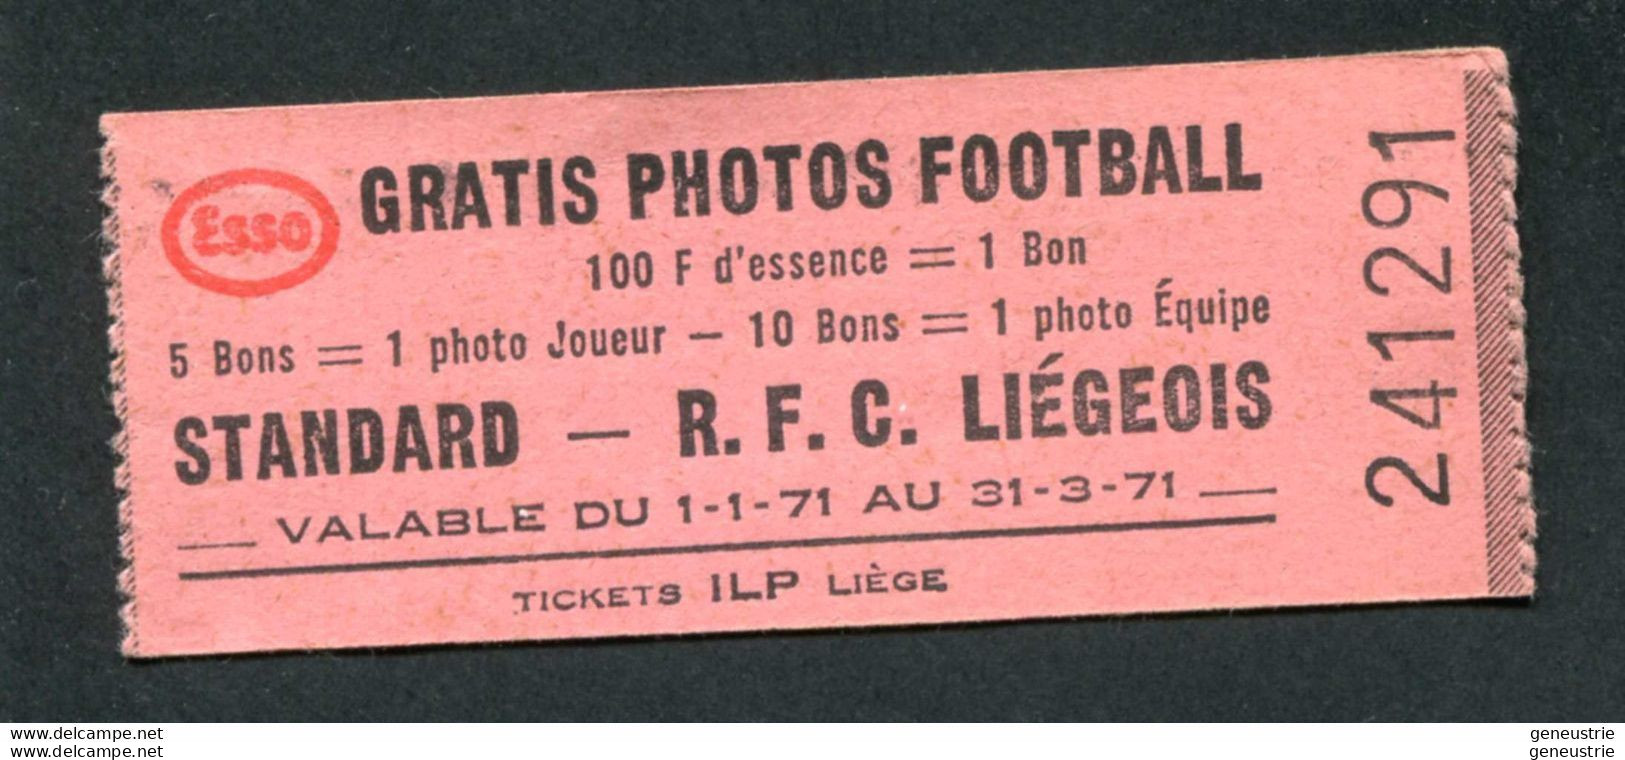 Jeton-carton De Nécessité - Ticket-prime 1971 "Esso Gratis Photos Football - R.F.C. Liégeois - ILP à Liège" - Monétaires / De Nécessité